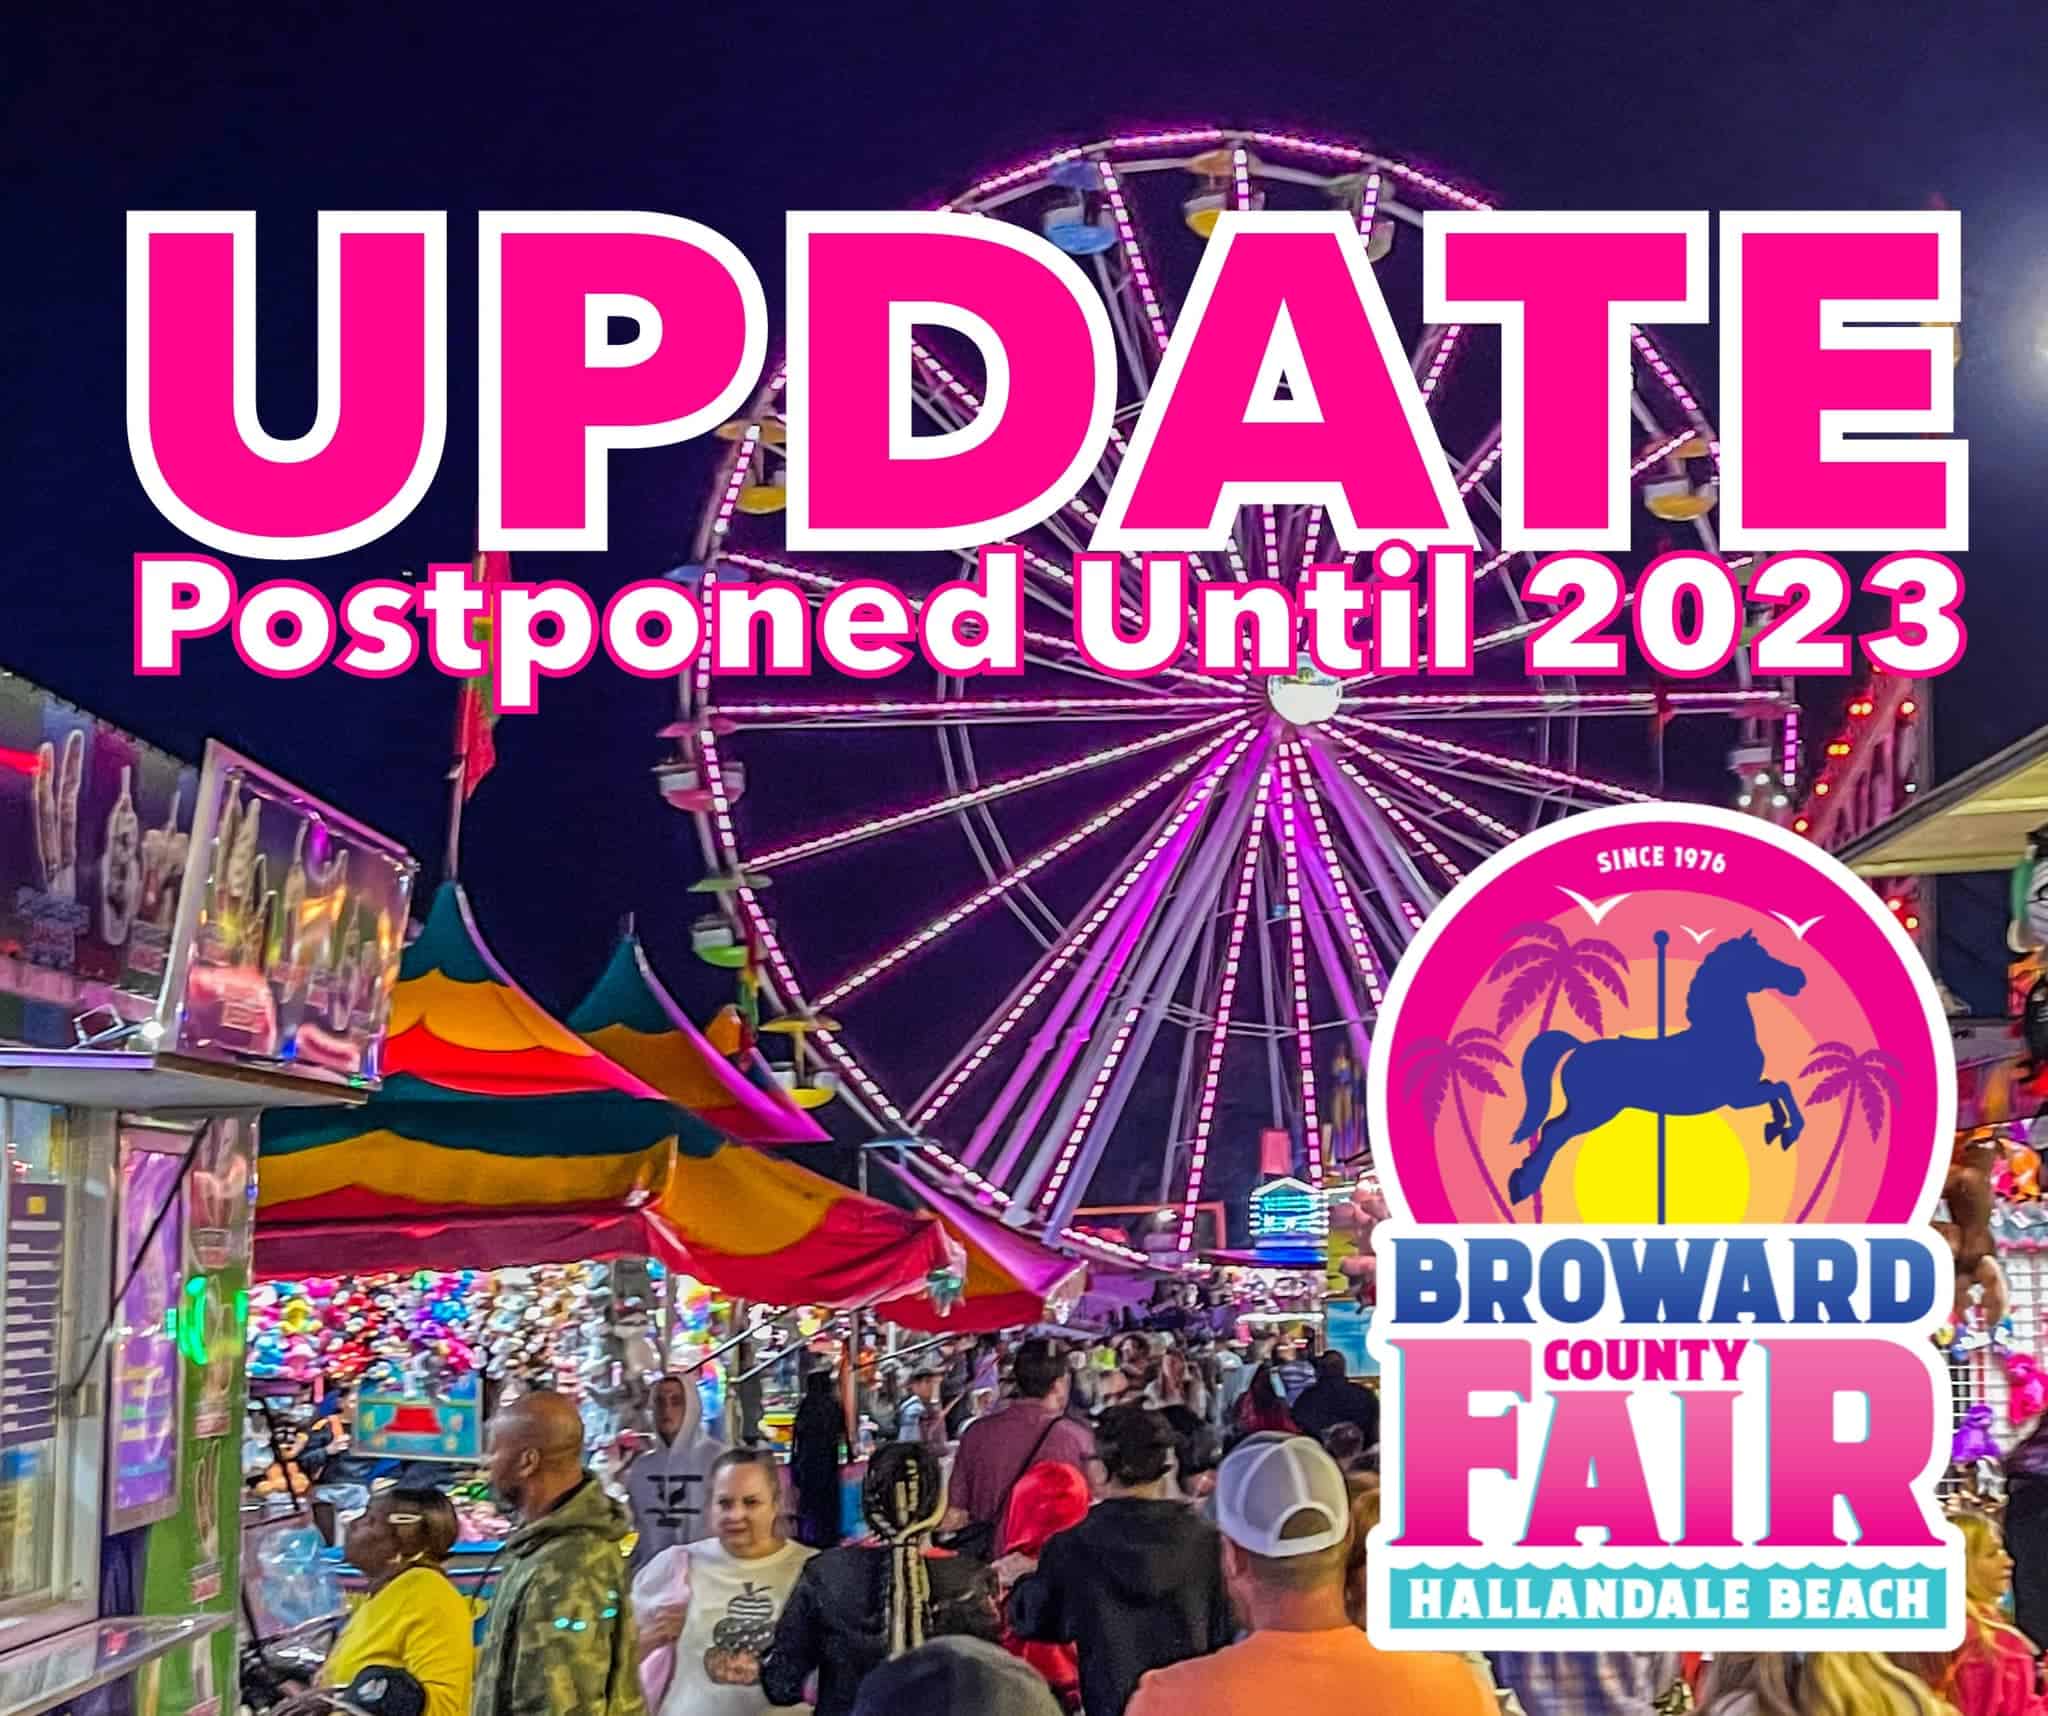 Broward County Fair - 2022 - Postponed to 2023